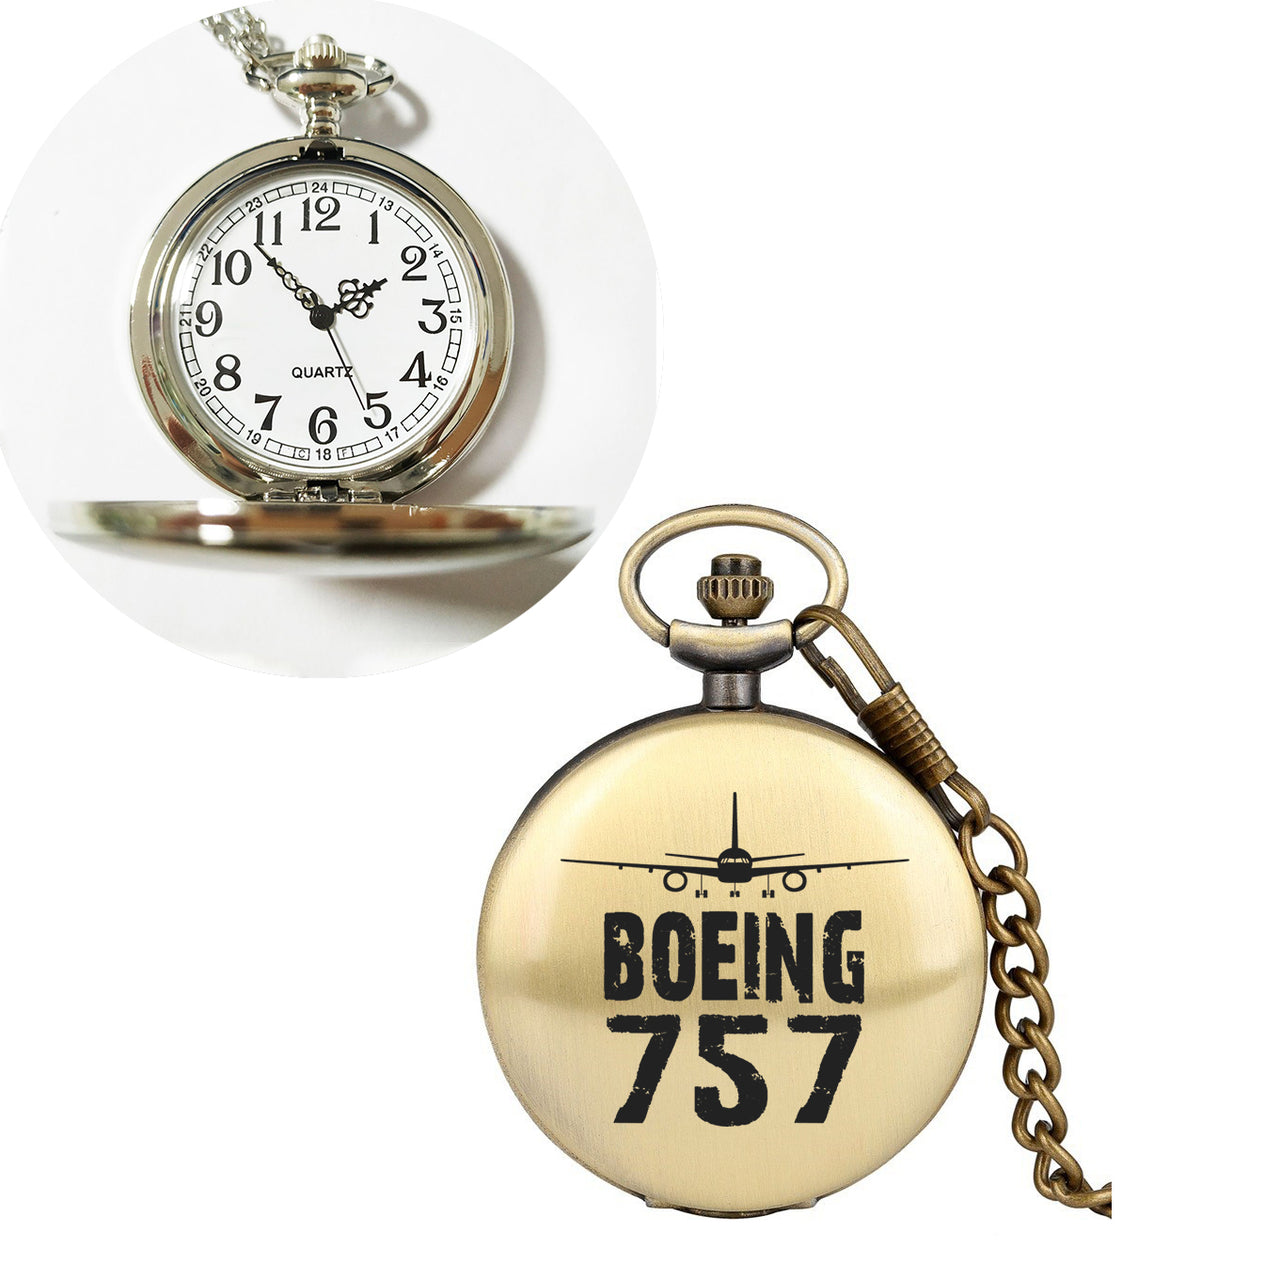 Boeing 757 & Plane Designed Pocket Watches